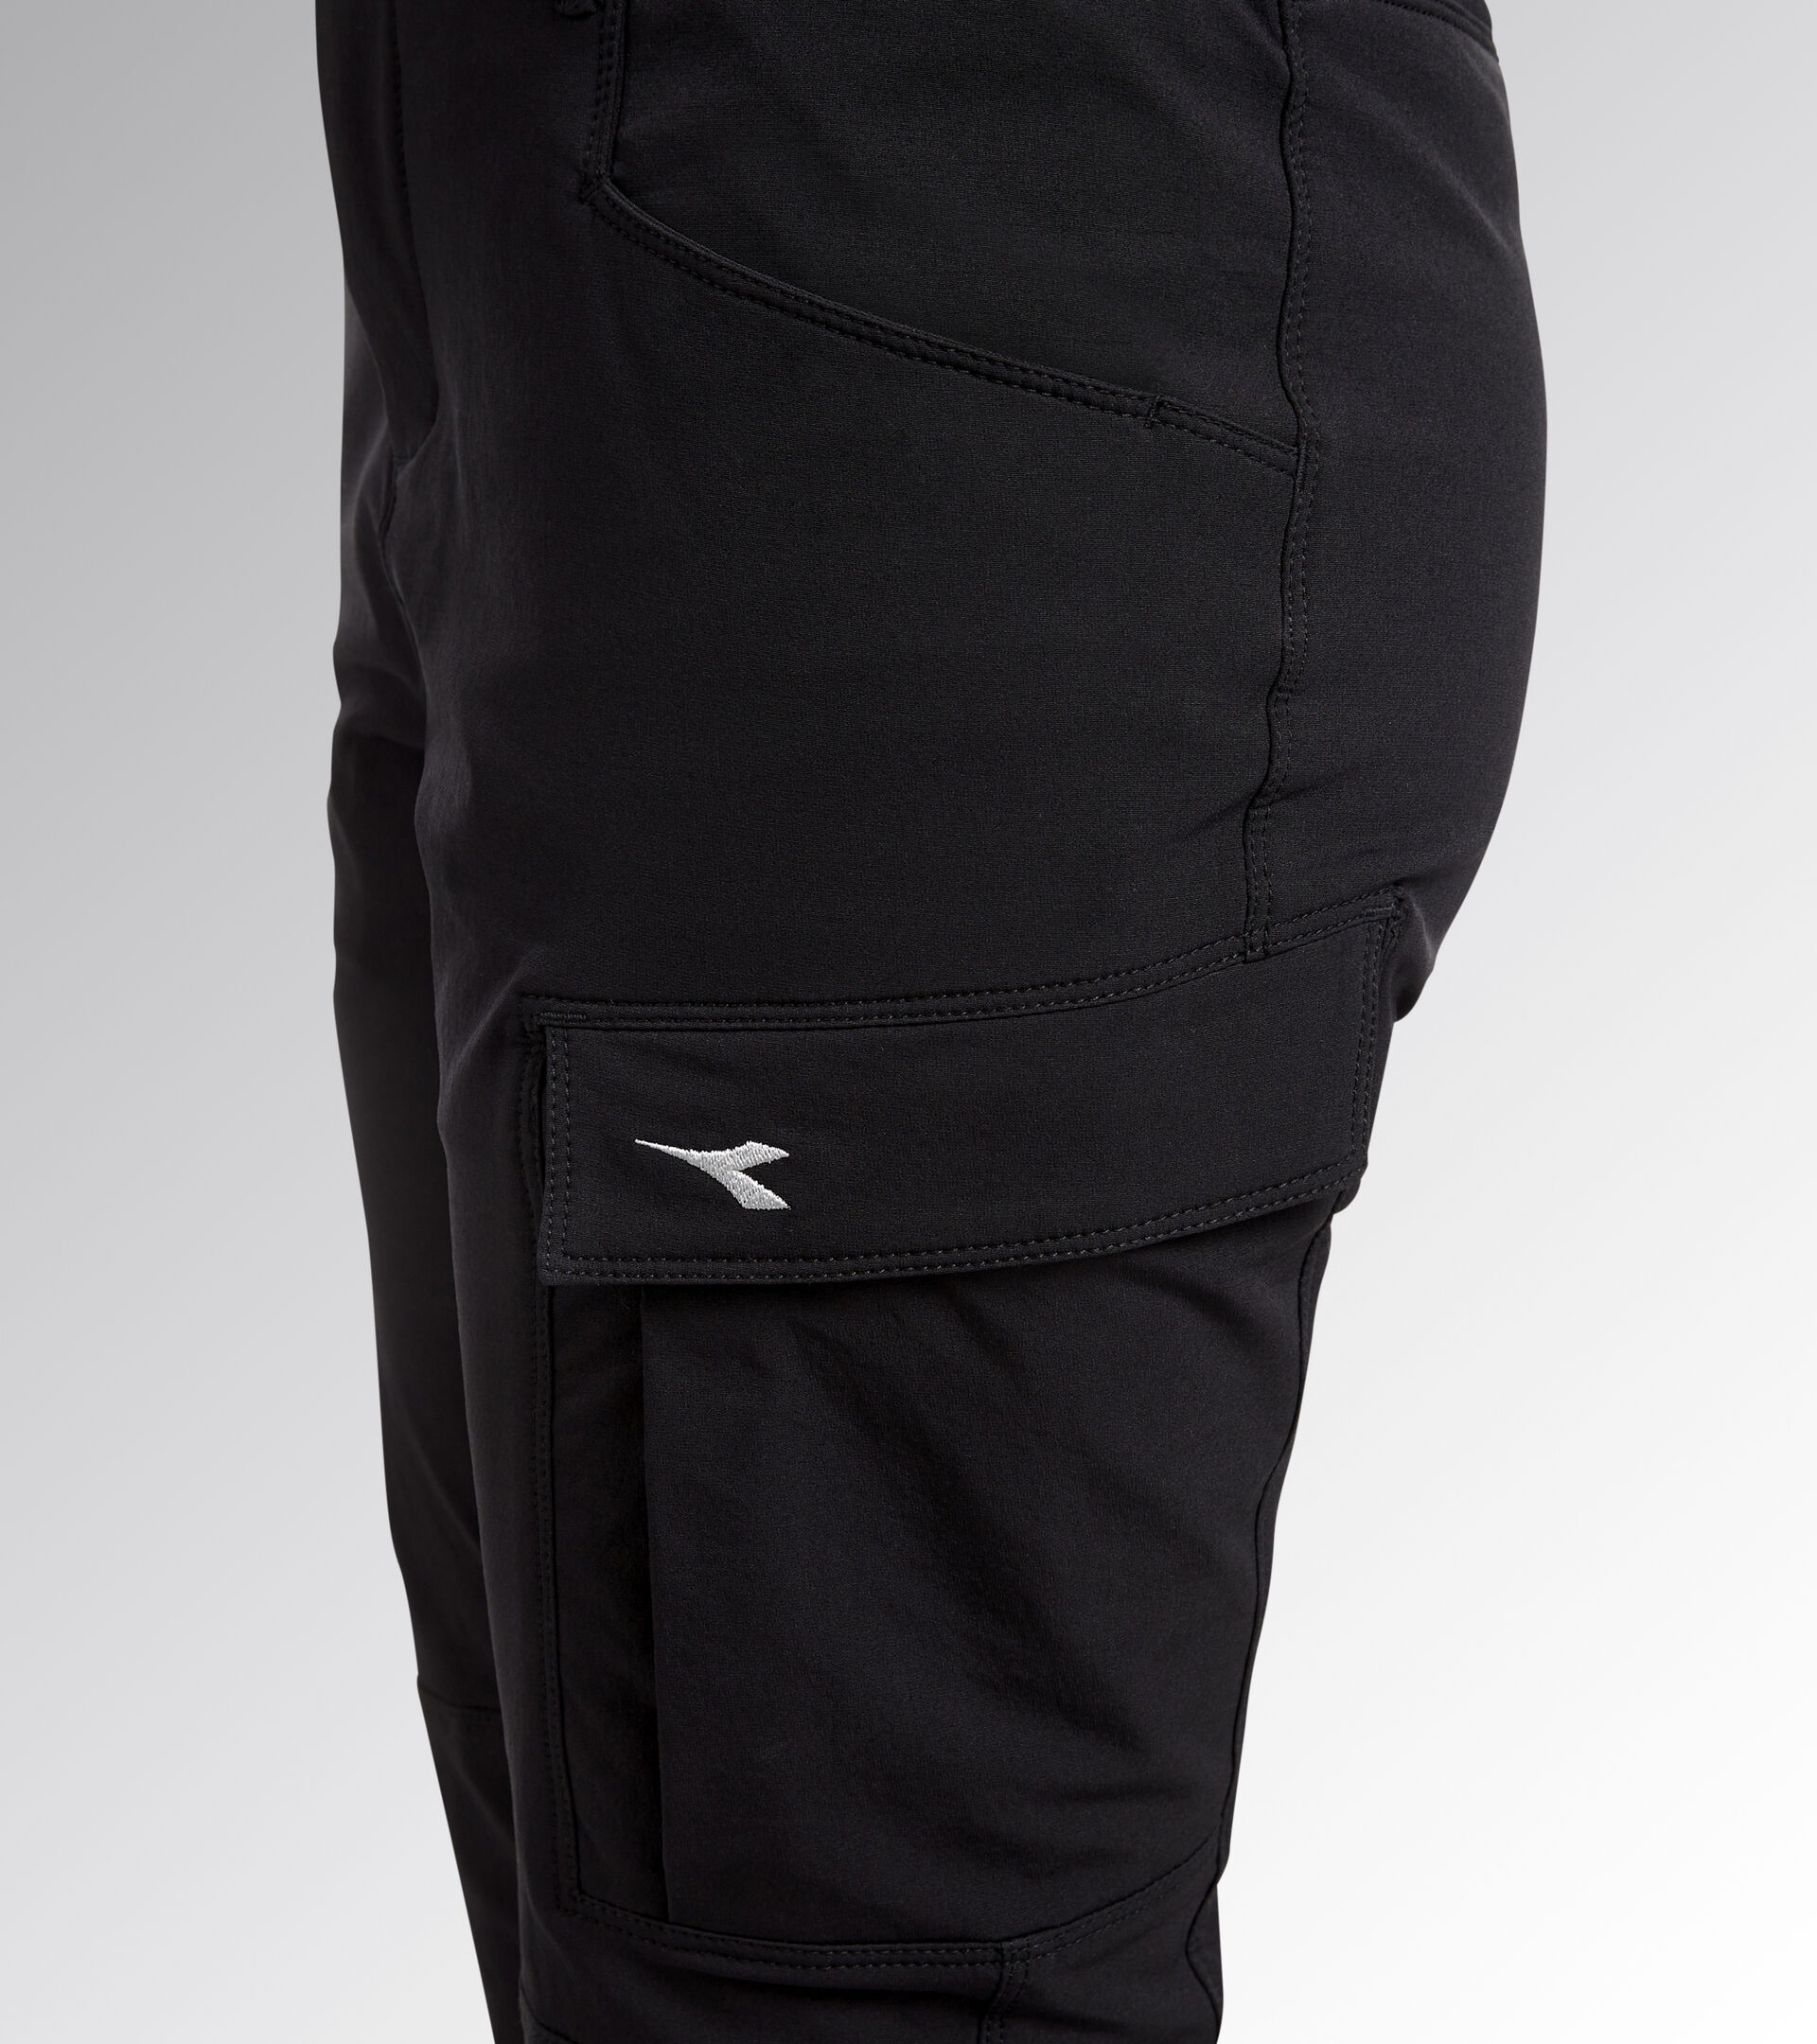 Pantalon de travail - Femme PANT ABILITY ATHENA NOIR - Utility